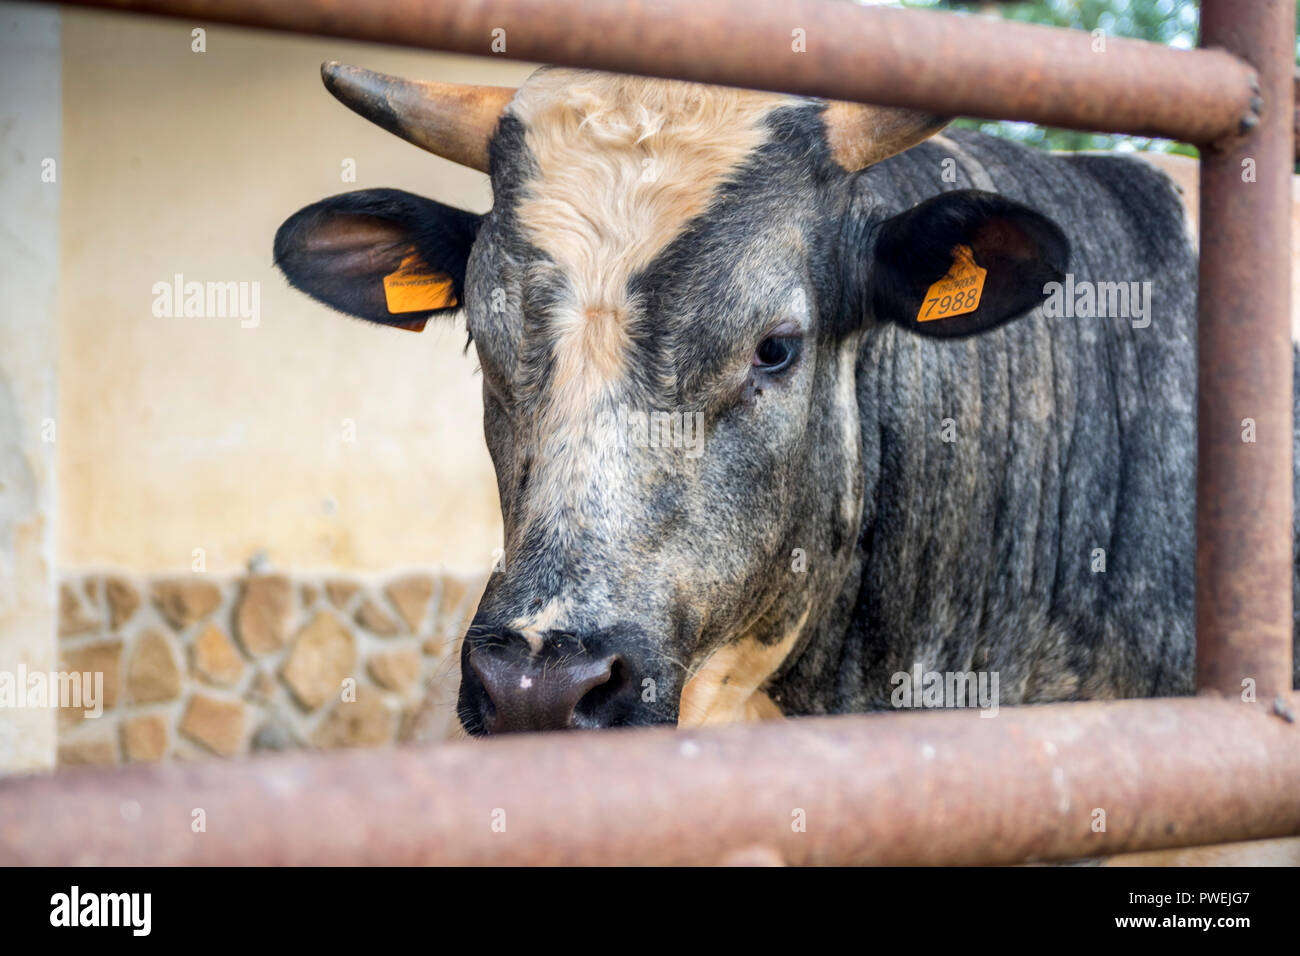 Gris blanc noir gros plan vache avec tagged ears, farm animal, les animaux de ferme, basse-cour, ferme, concept concept rural, de la nature, de la viande bovine en Italie Banque D'Images